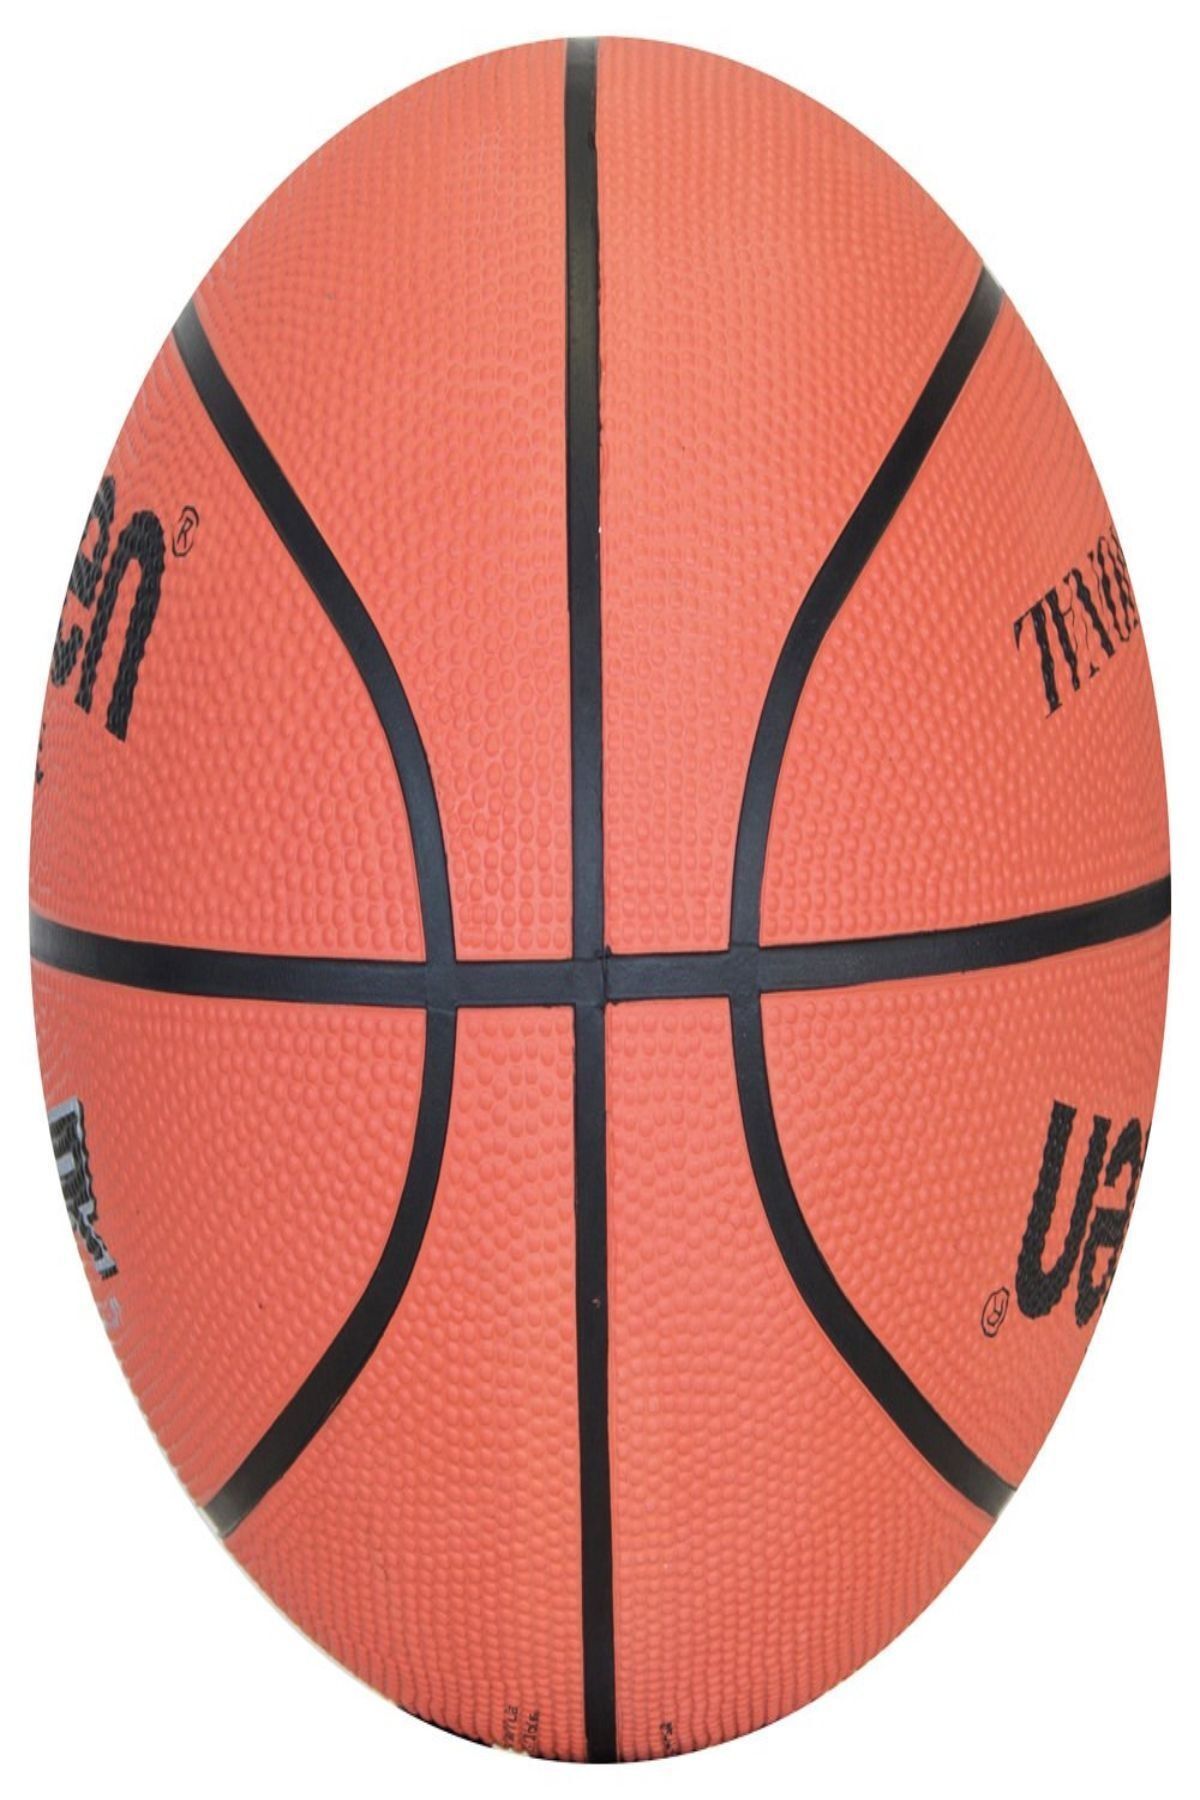 Molten B6R2/K No:6 Basket Topu